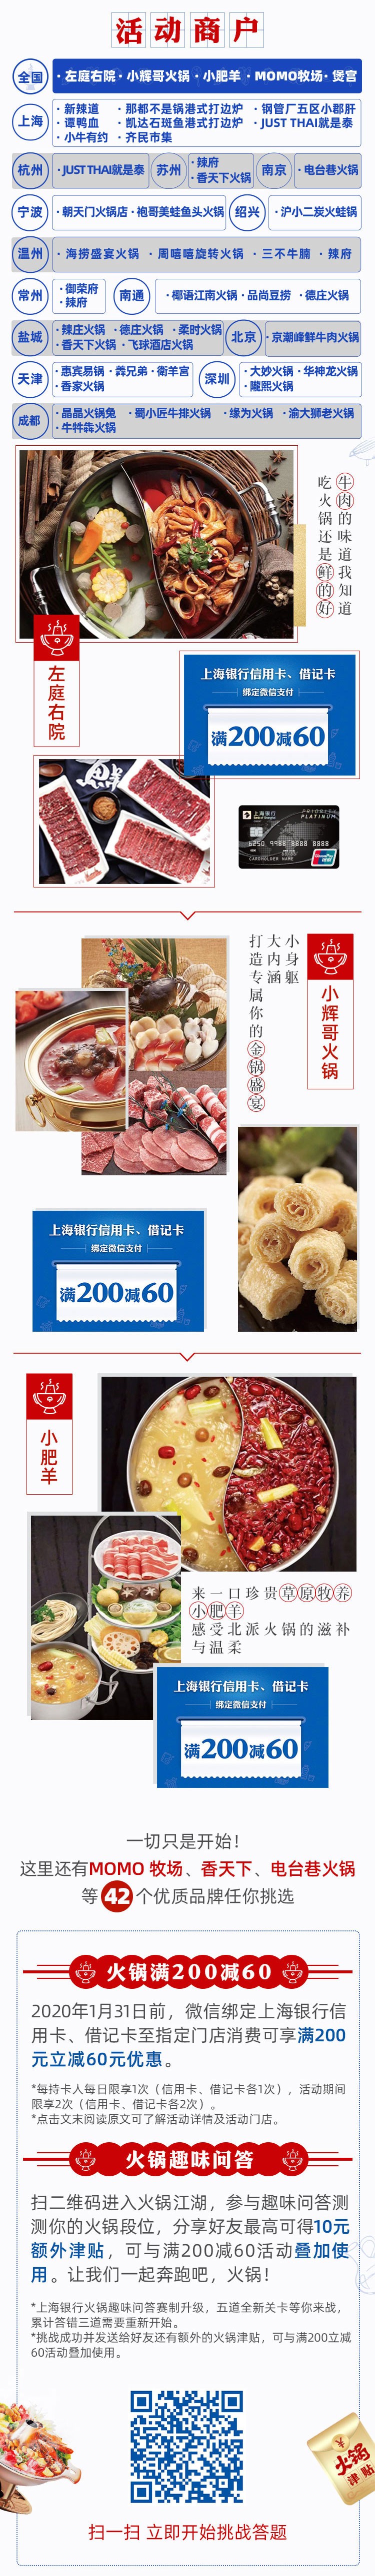 上海银行卡微信支付火锅满200-60元